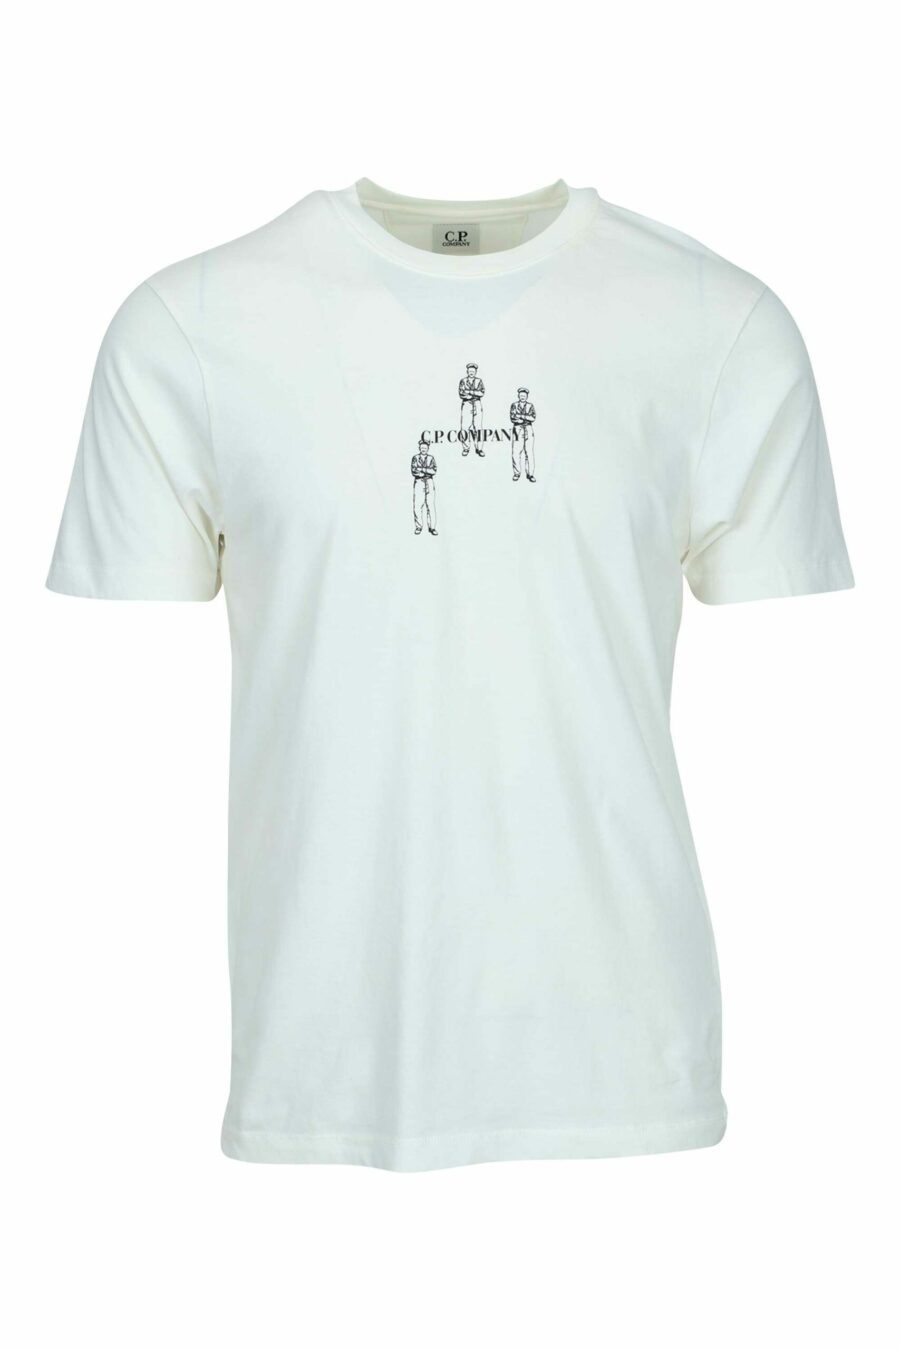 Weißes T-Shirt mit Minilog "cp" mit zentrierten Matrosen - 7620943764369 skaliert